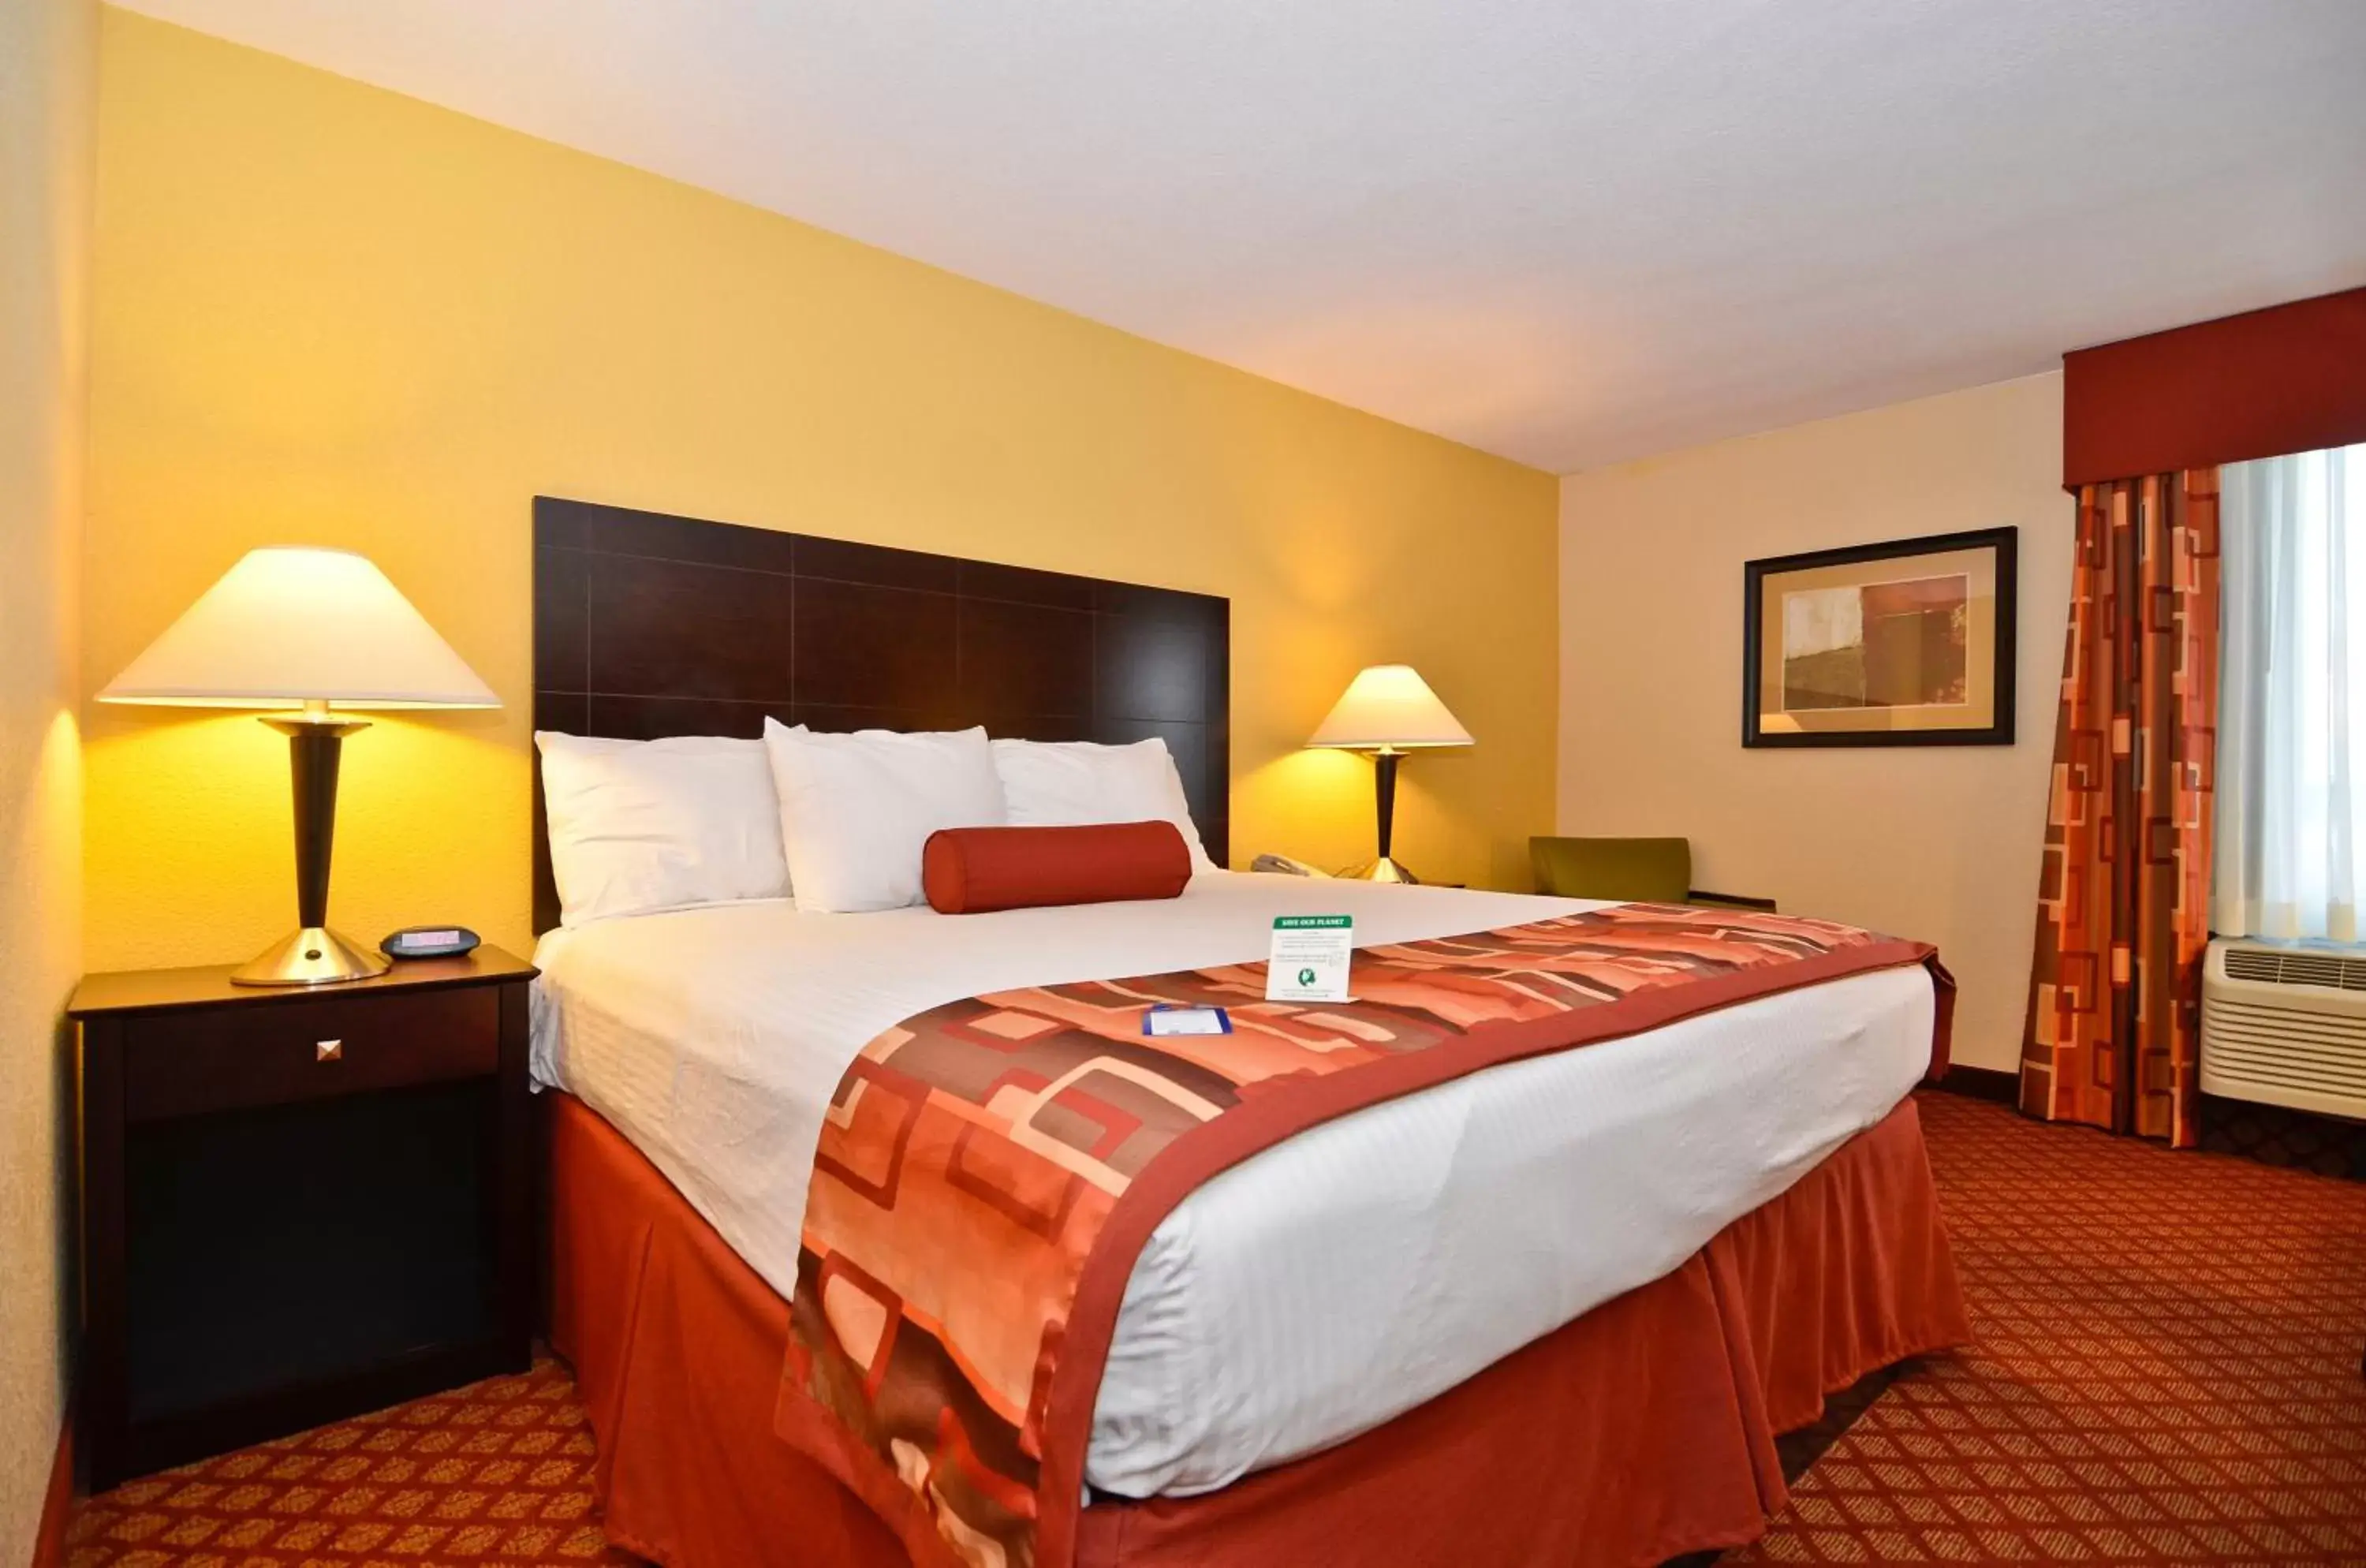 Bedroom, Bed in Best Western Plus Parkway Hotel